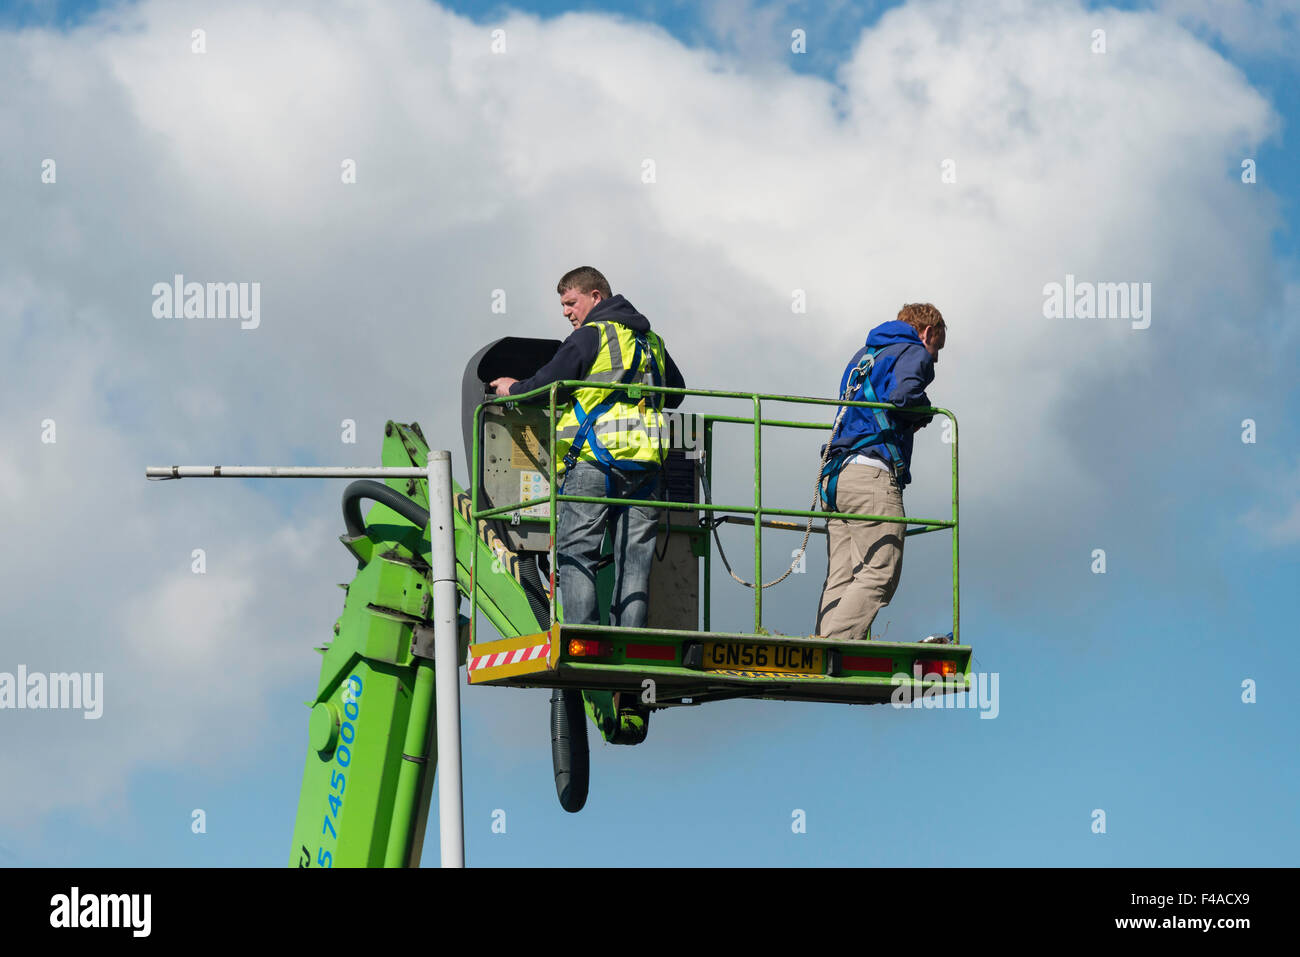 Les hommes qui travaillent sur la plate-forme d'accès Sky King, London Road, Sevenoaks, Kent, Angleterre, Royaume-Uni Banque D'Images